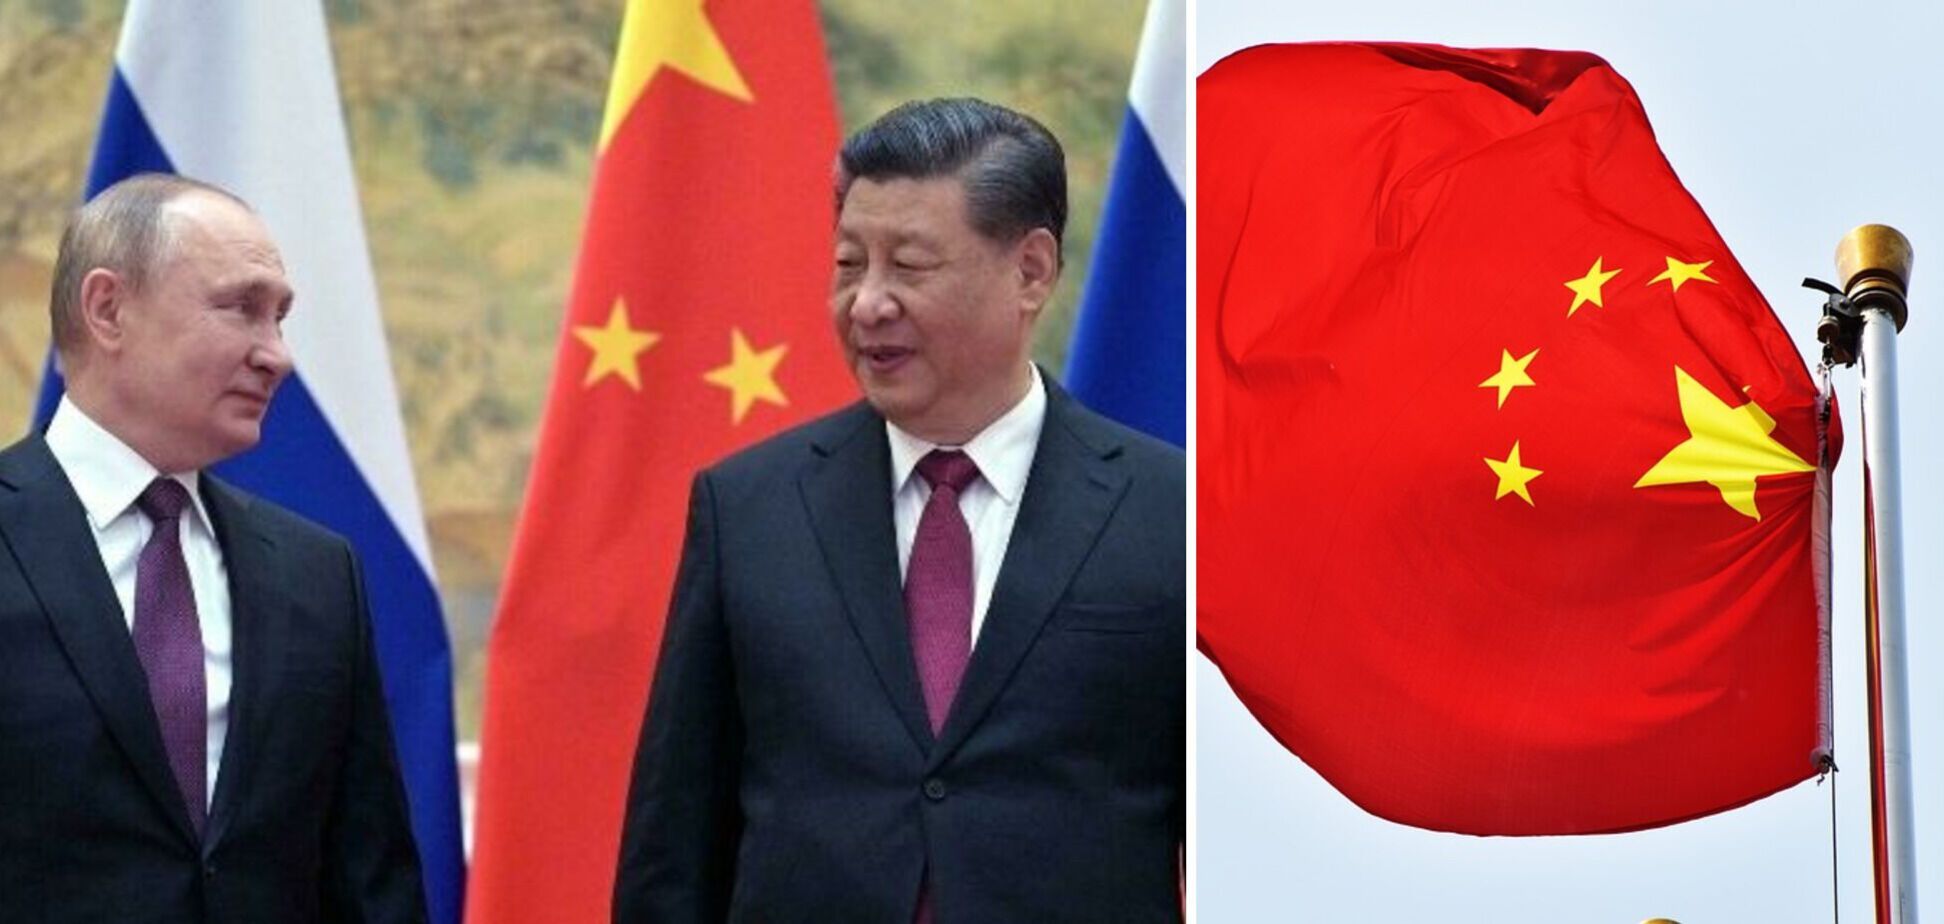 Си Цзиньпин следит за войной в Украине, как ястреб: глава ЦРУ объяснил позицию Китая и сказал, что больше всего беспокоит Путина